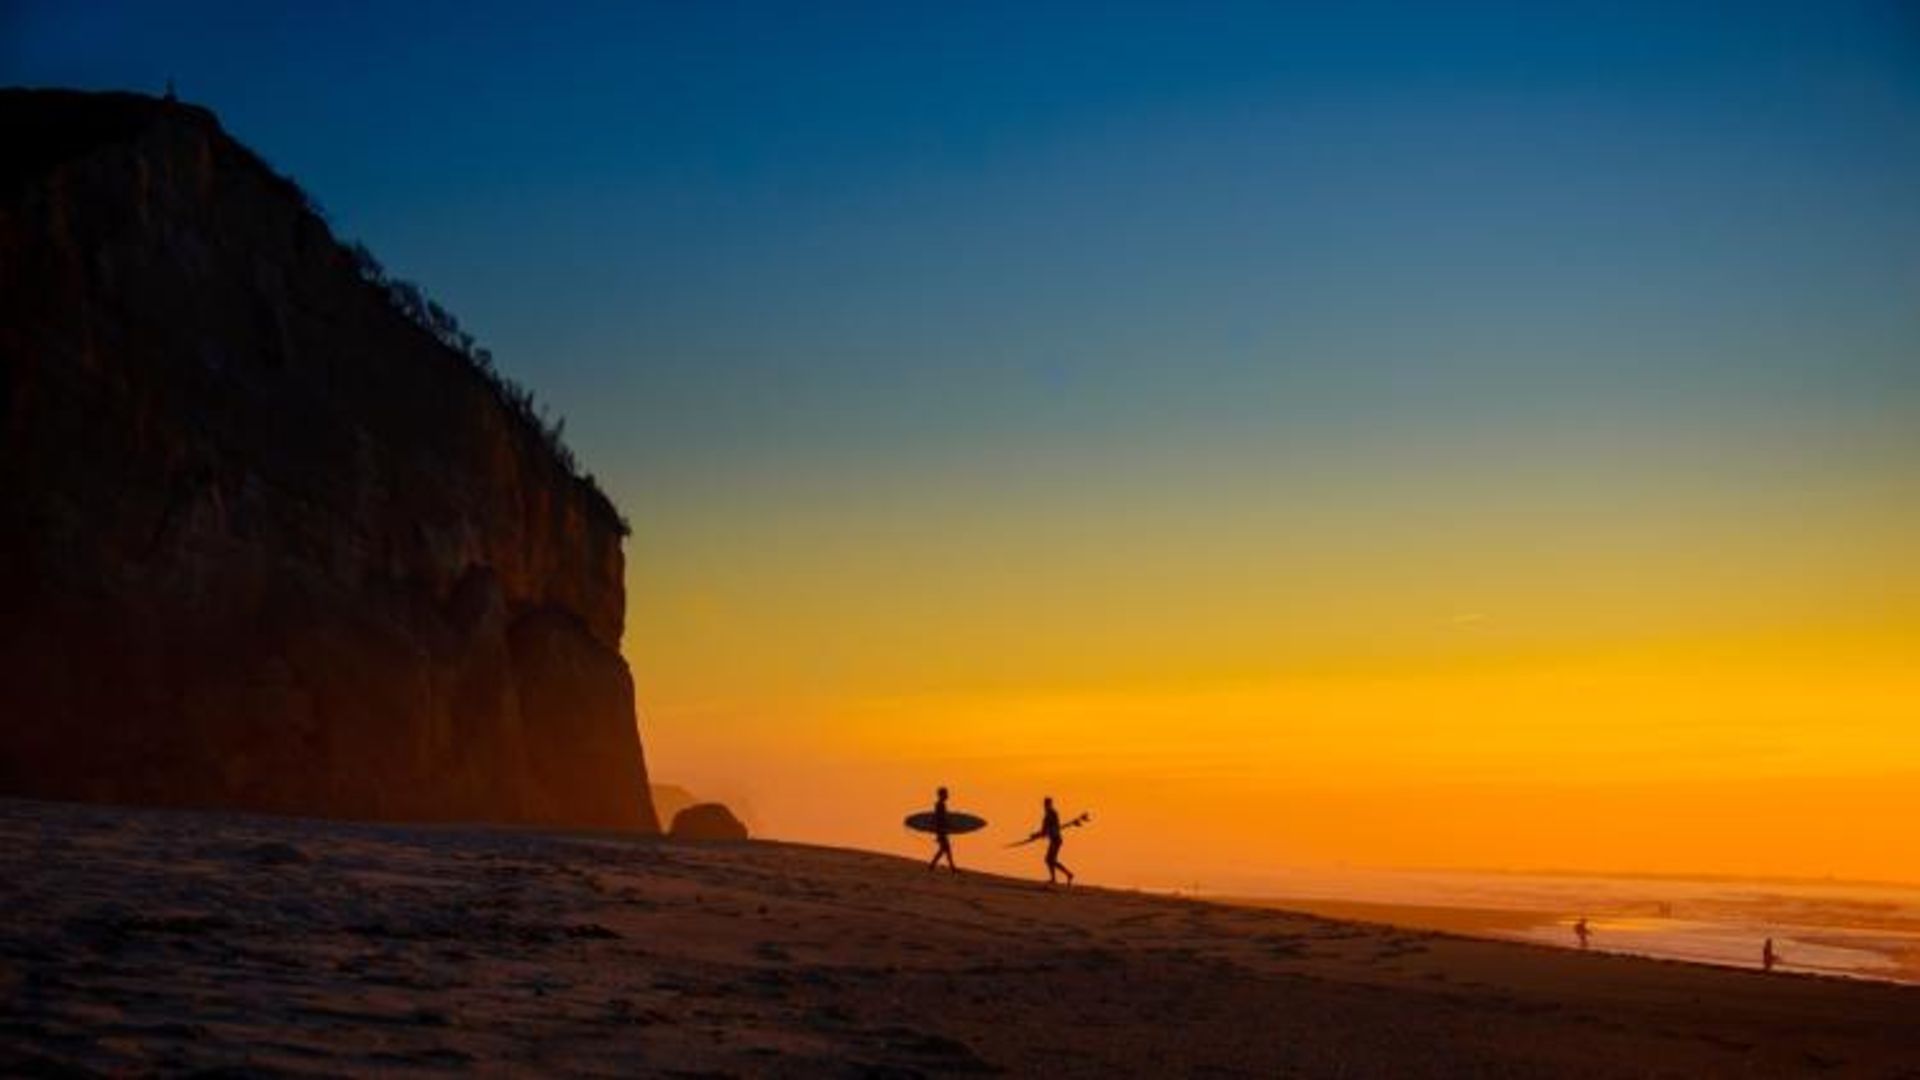 مرجع متخصصين ايران عكس فيناليست پيتر جولي در مسابقه عكاسي 2020 Surf Photo Nikon Australia